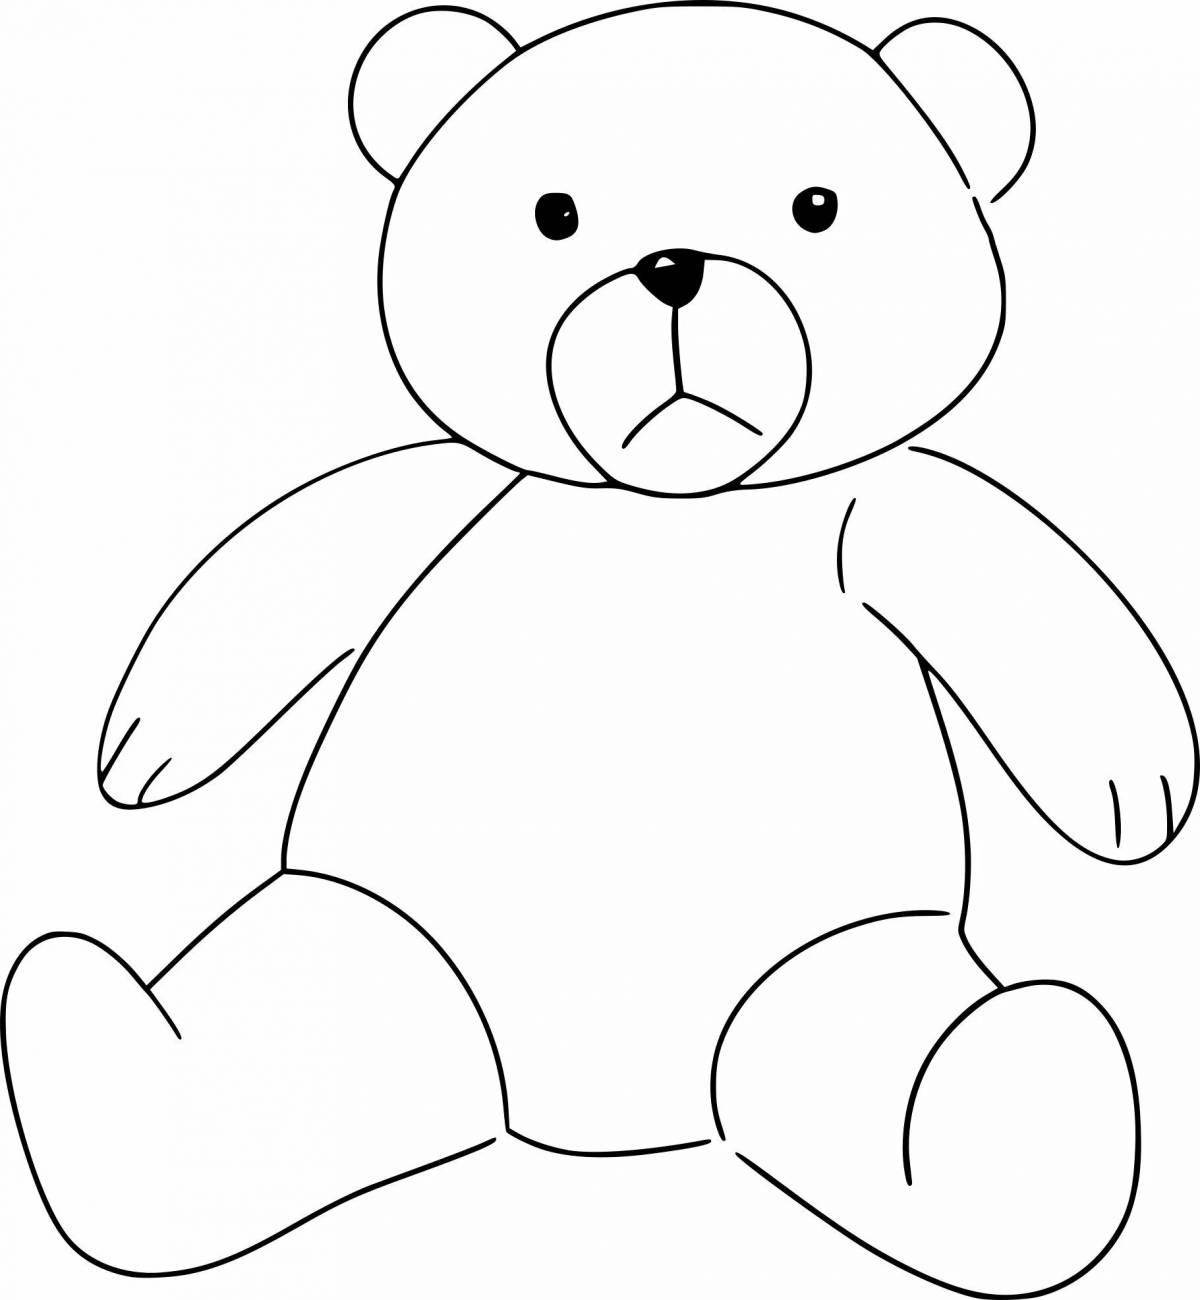 Cute teddy bear pattern for kids